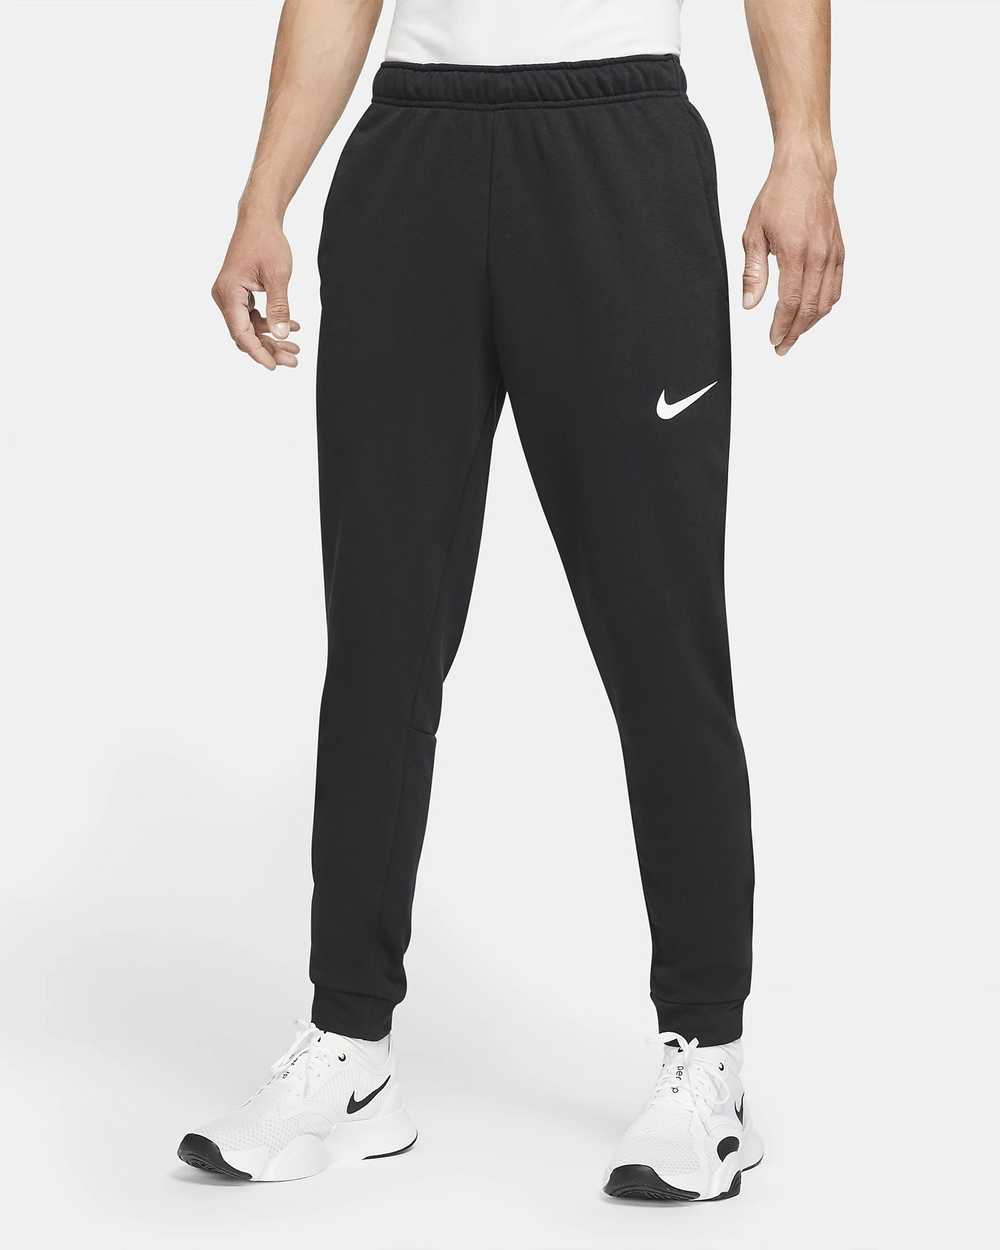 Nike Men's Dri-FIT Taper Fitness Fleece Trousers - image 12